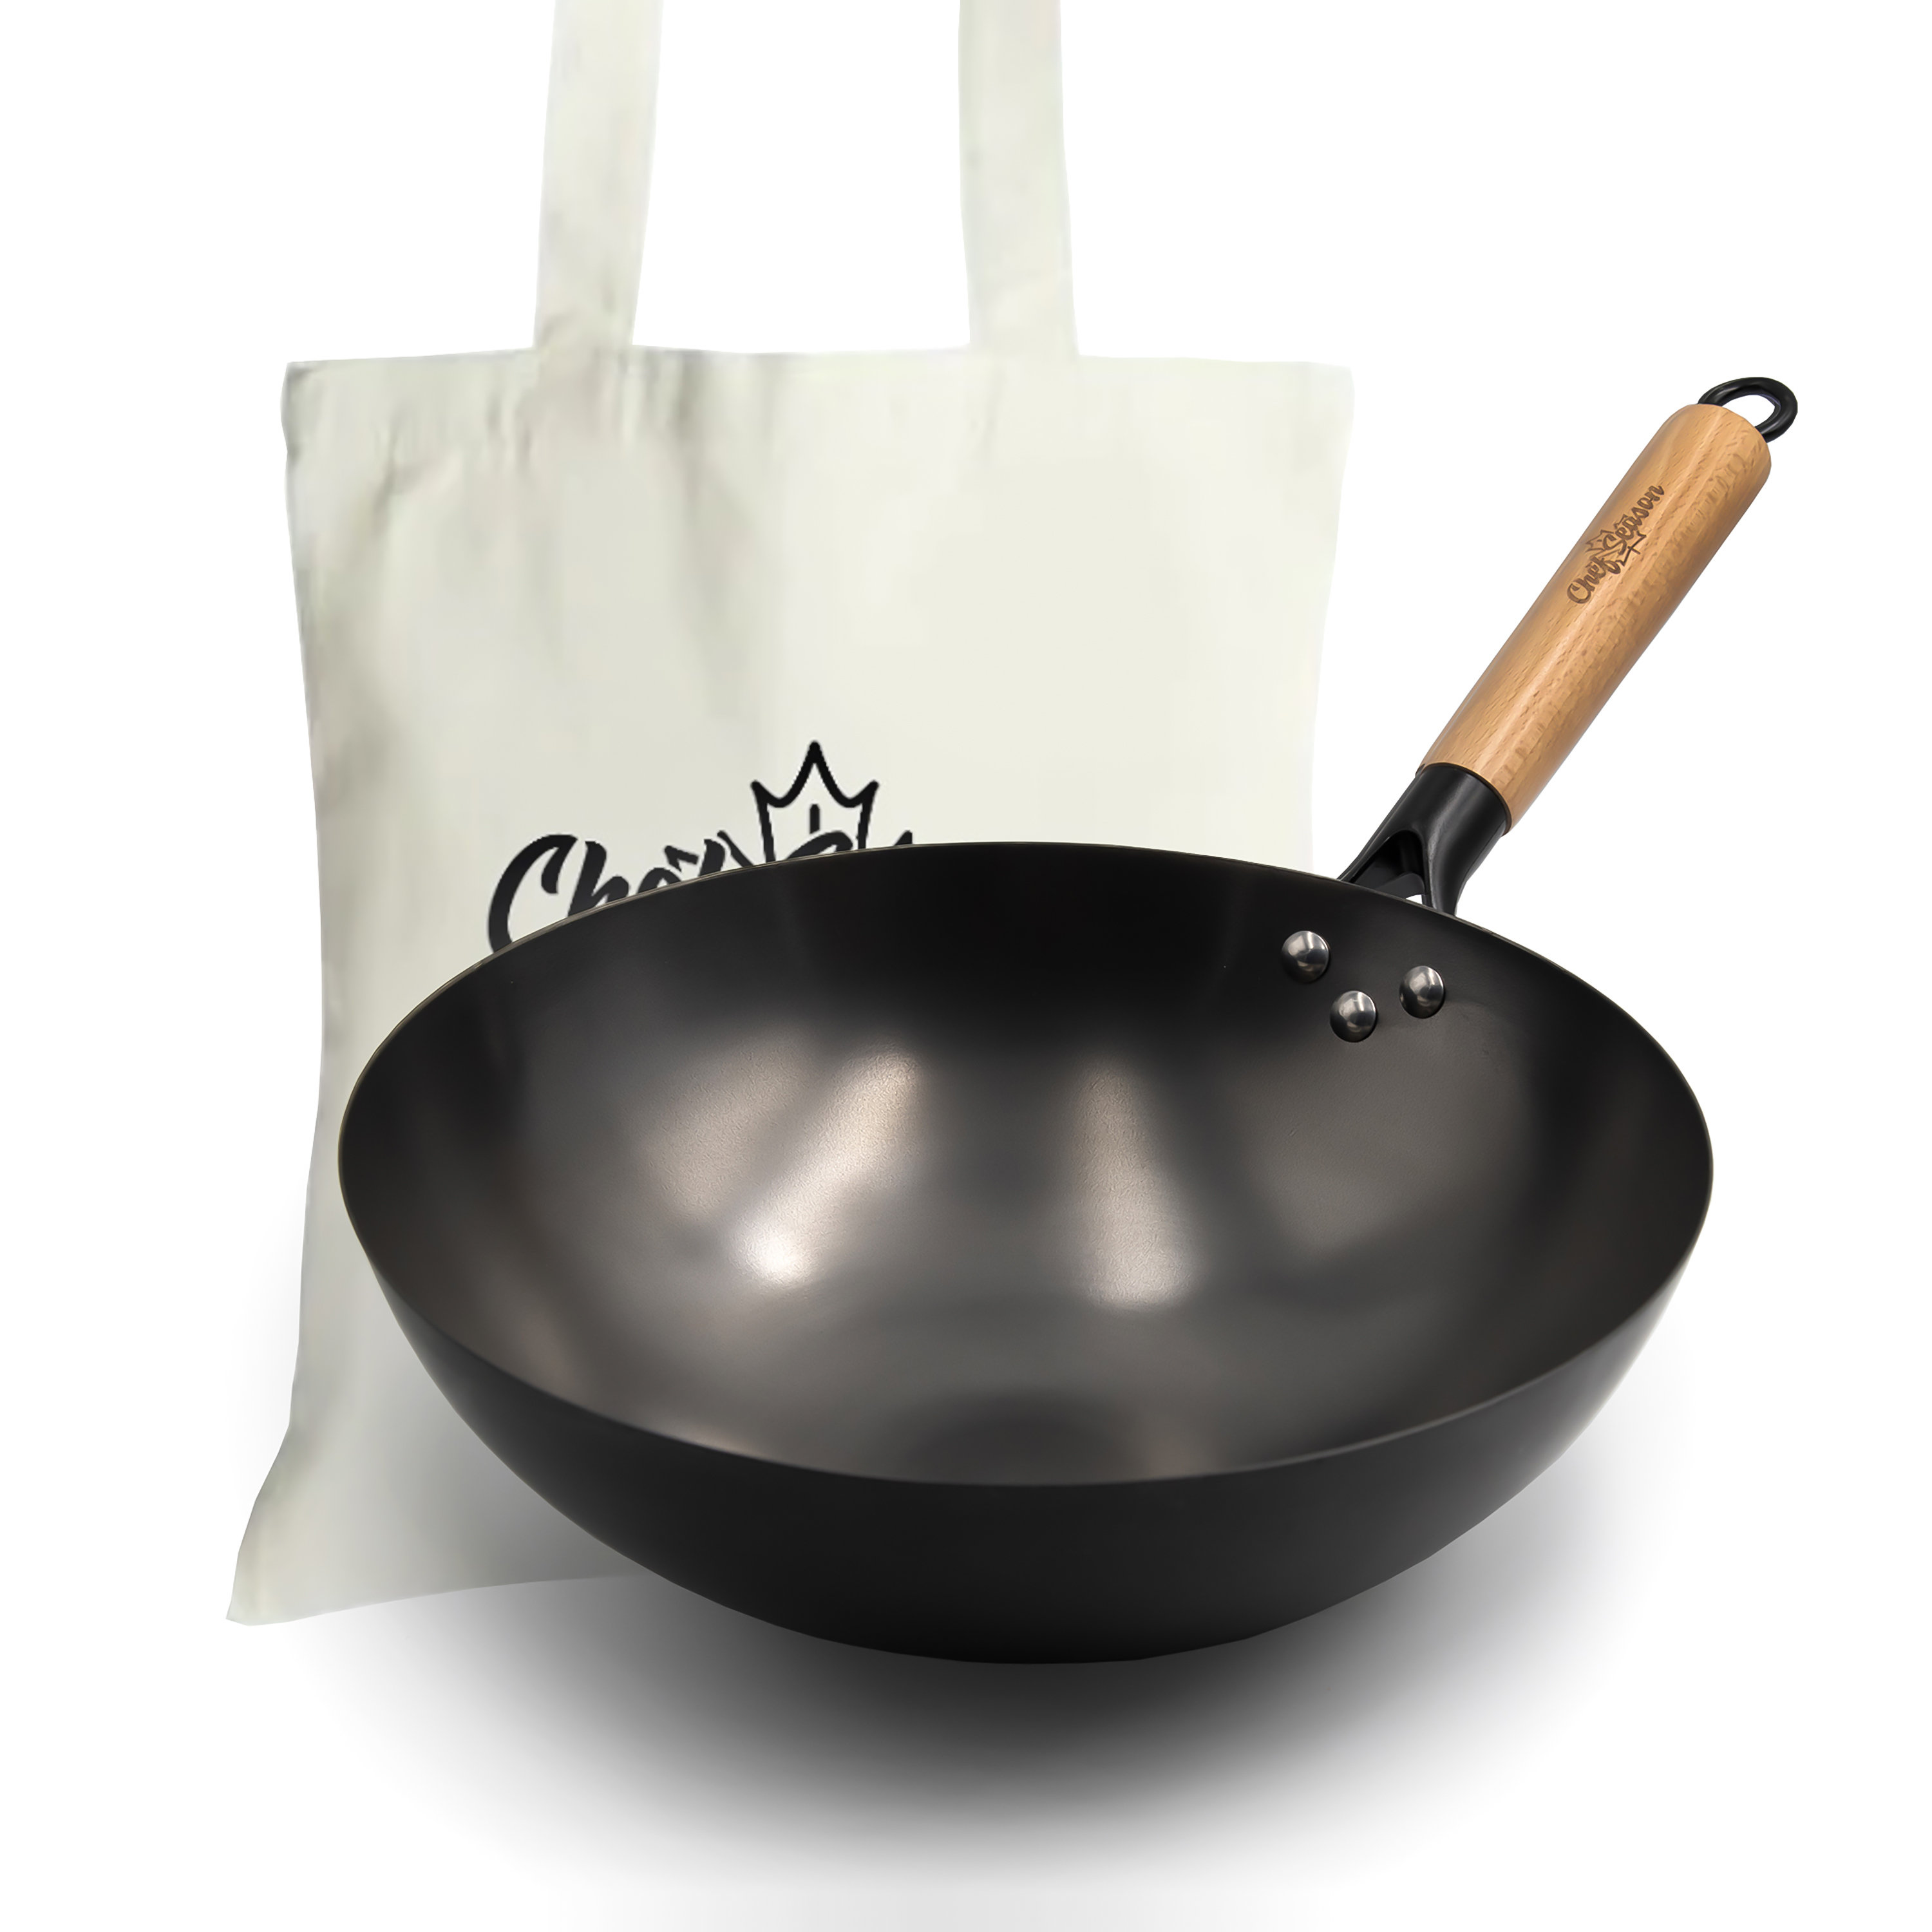 ChefSeason Carbon Steel Wok, 12.6" Bottom, 100% Coating Free, Pre-seasoned, Free Tote Bag & Reviews | Wayfair